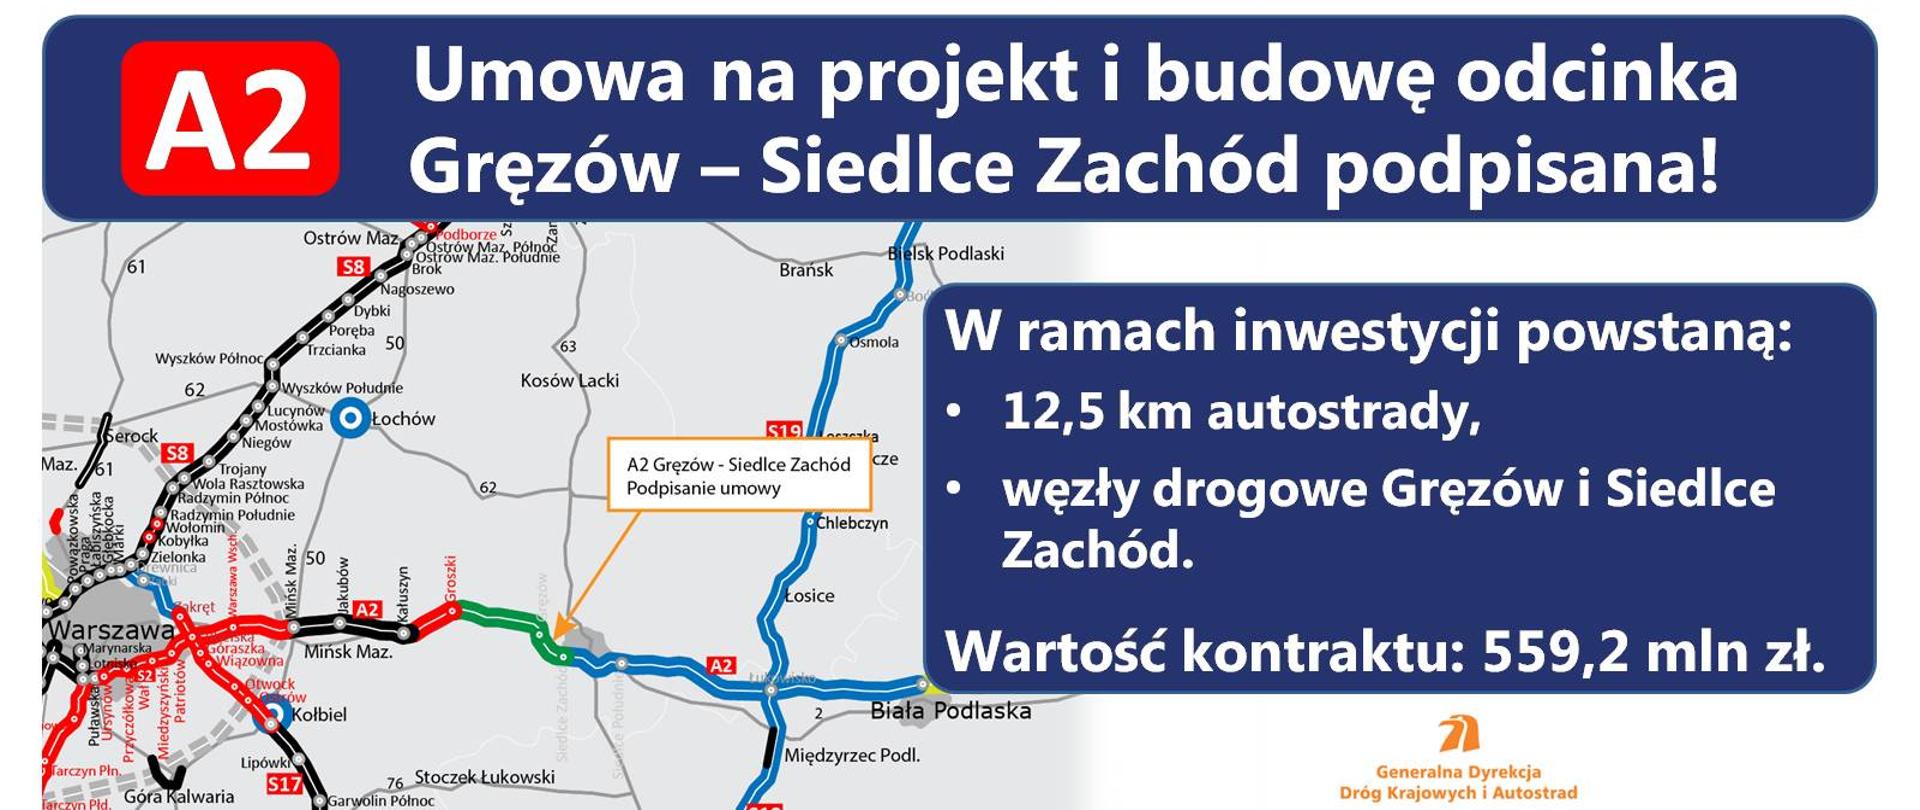 Druga umowa na projekt i budowę A2 z Mińska Mazowieckiego do Siedlec podpisana - infografika